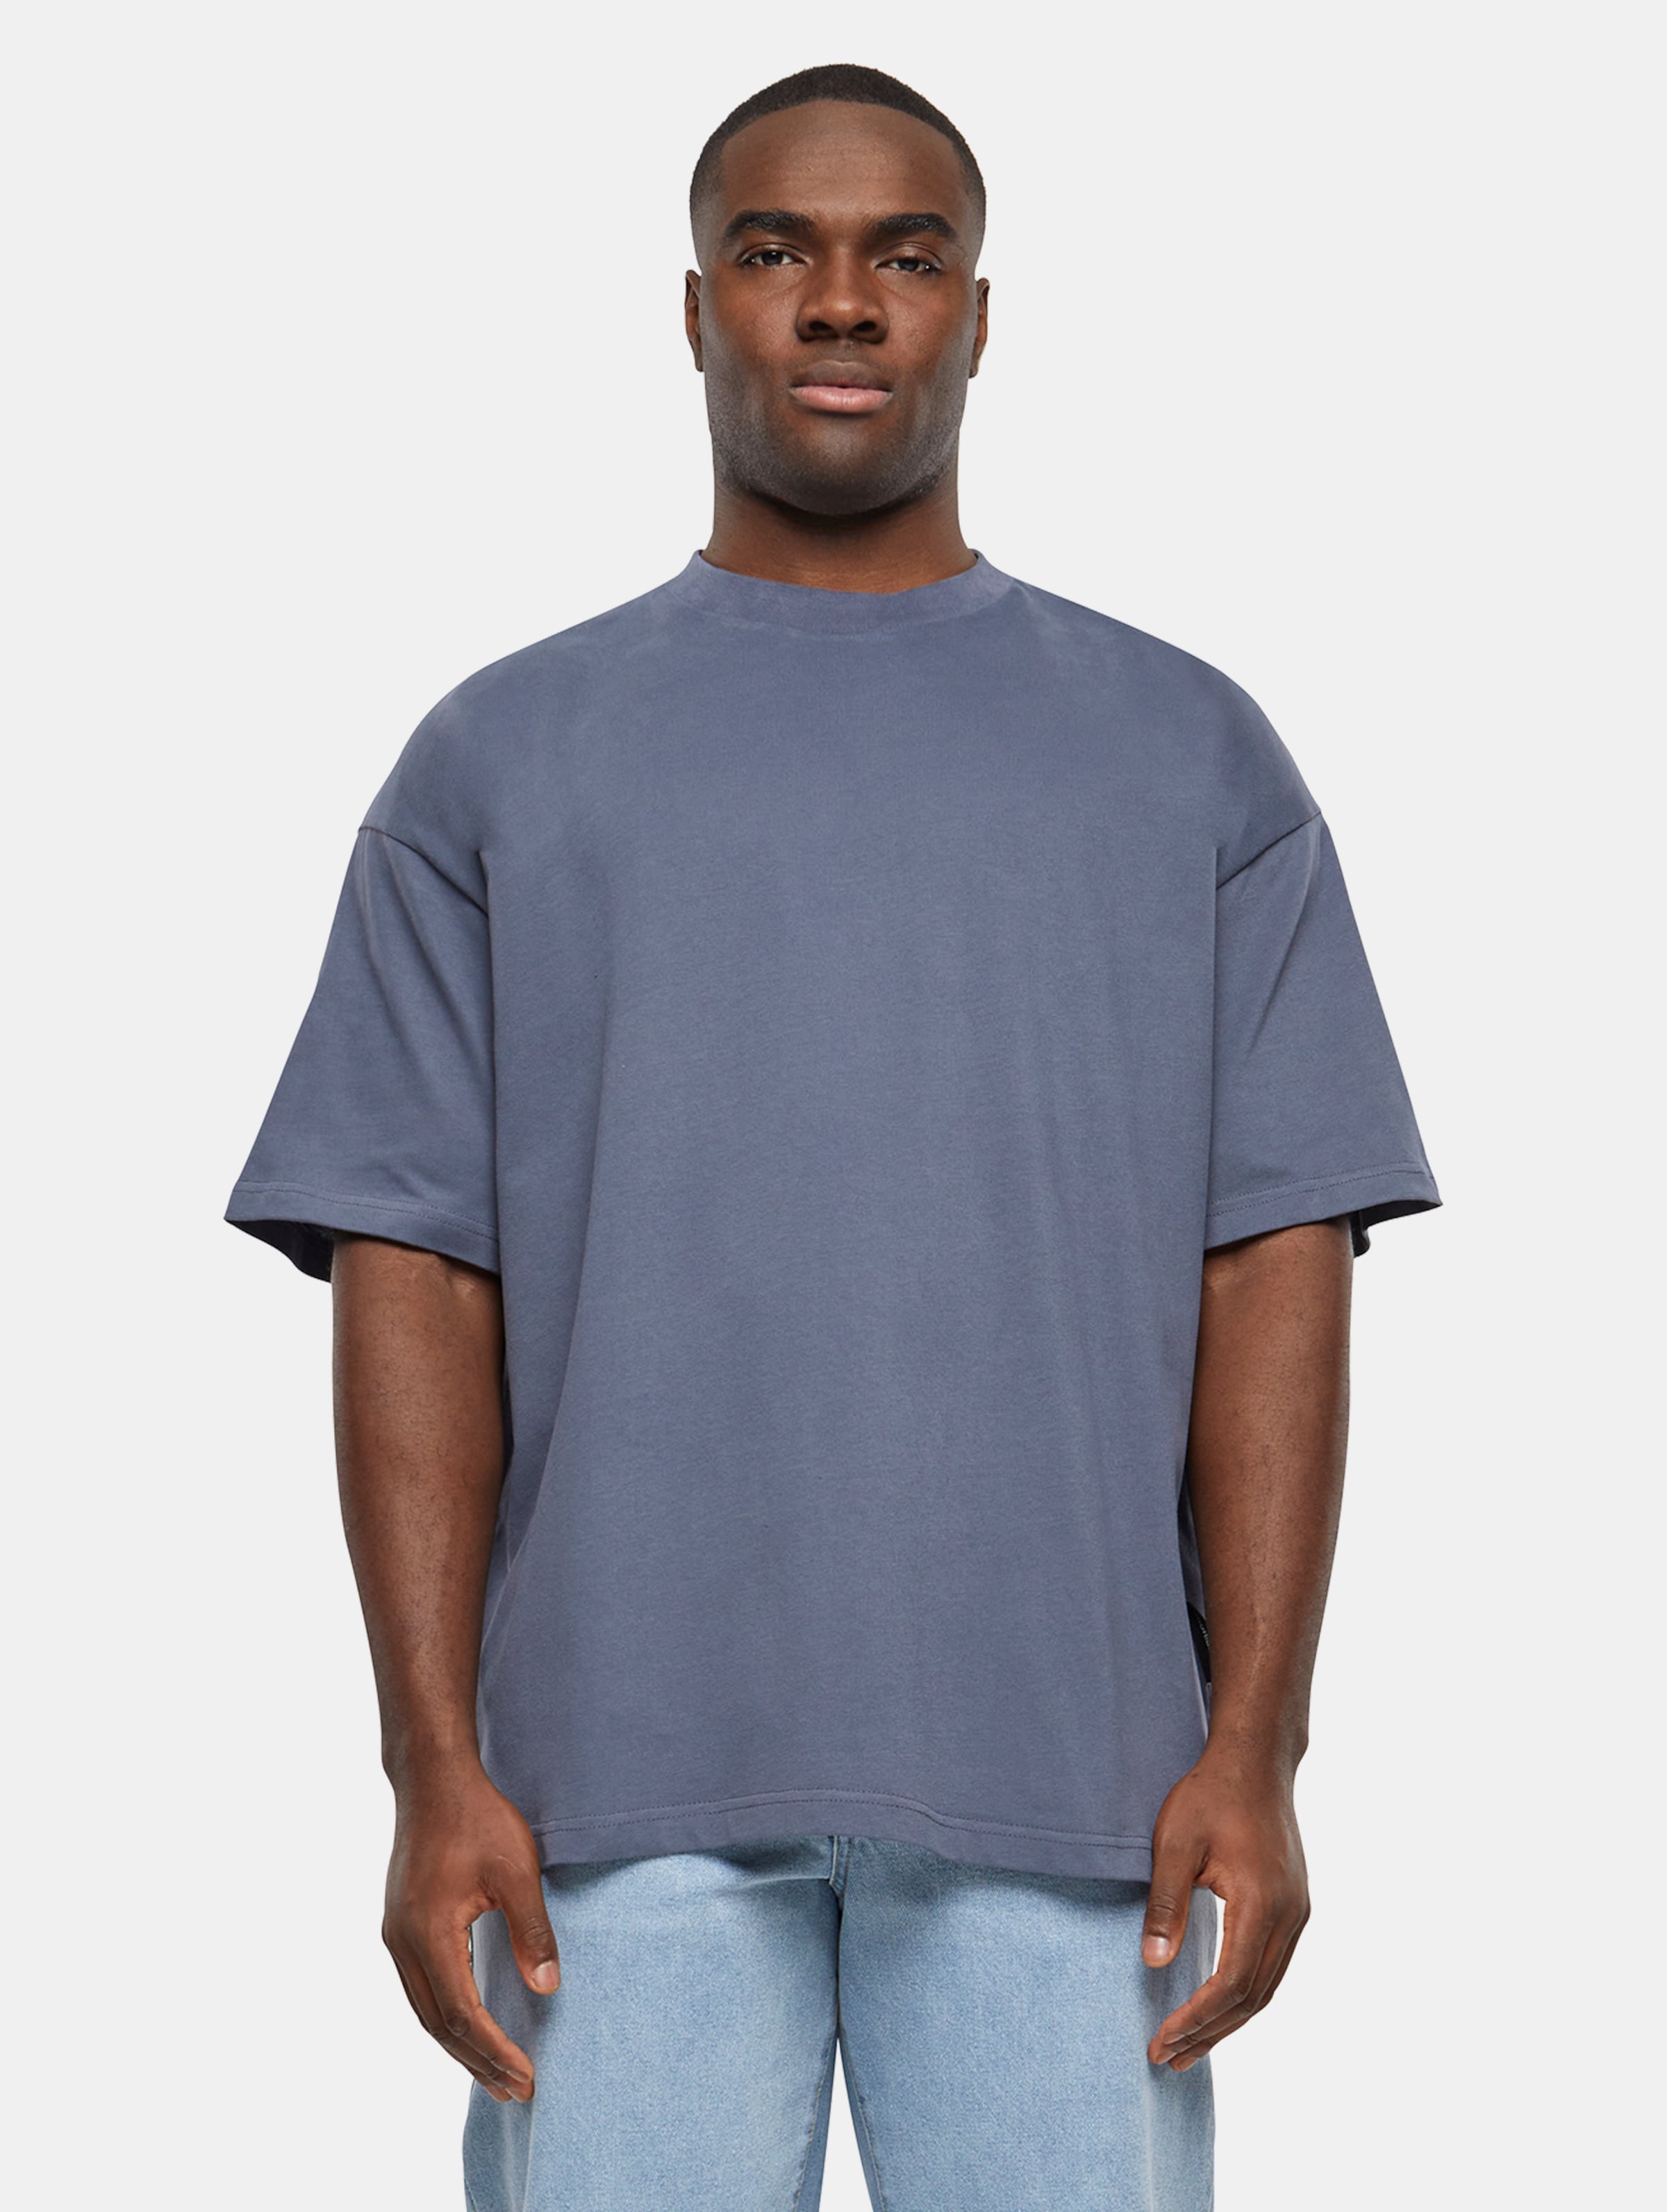 Prohibited Oversized T-Shirts Männer,Unisex op kleur grijs, Maat XL